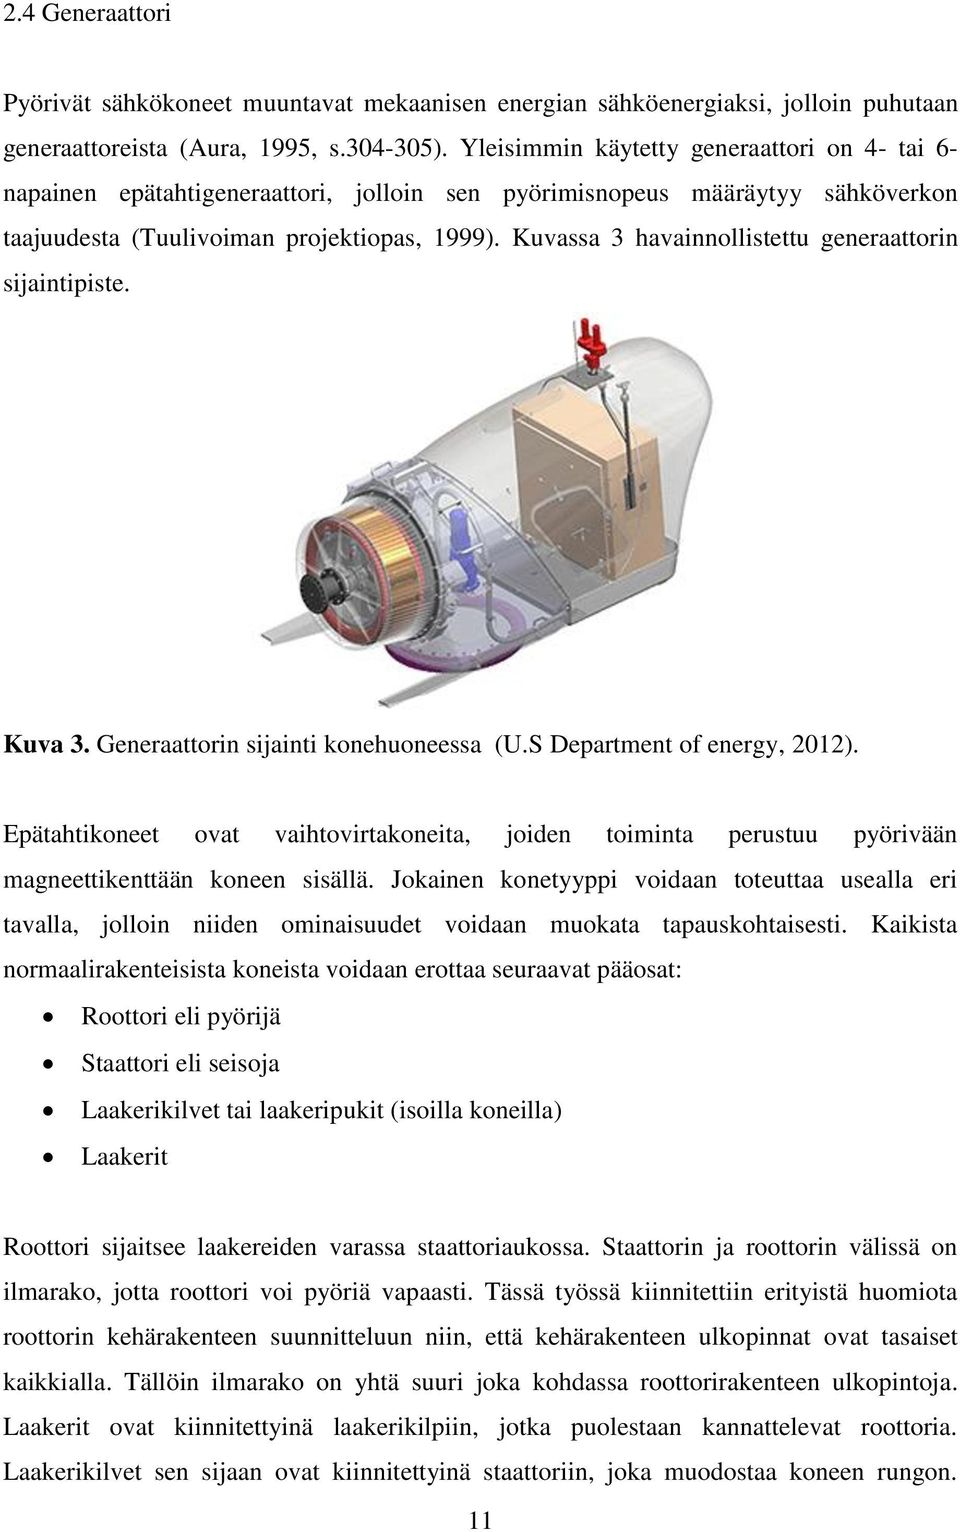 Kuvassa 3 havainnollistettu generaattorin sijaintipiste. Kuva 3. Generaattorin sijainti konehuoneessa (U.S Department of energy, 2012).